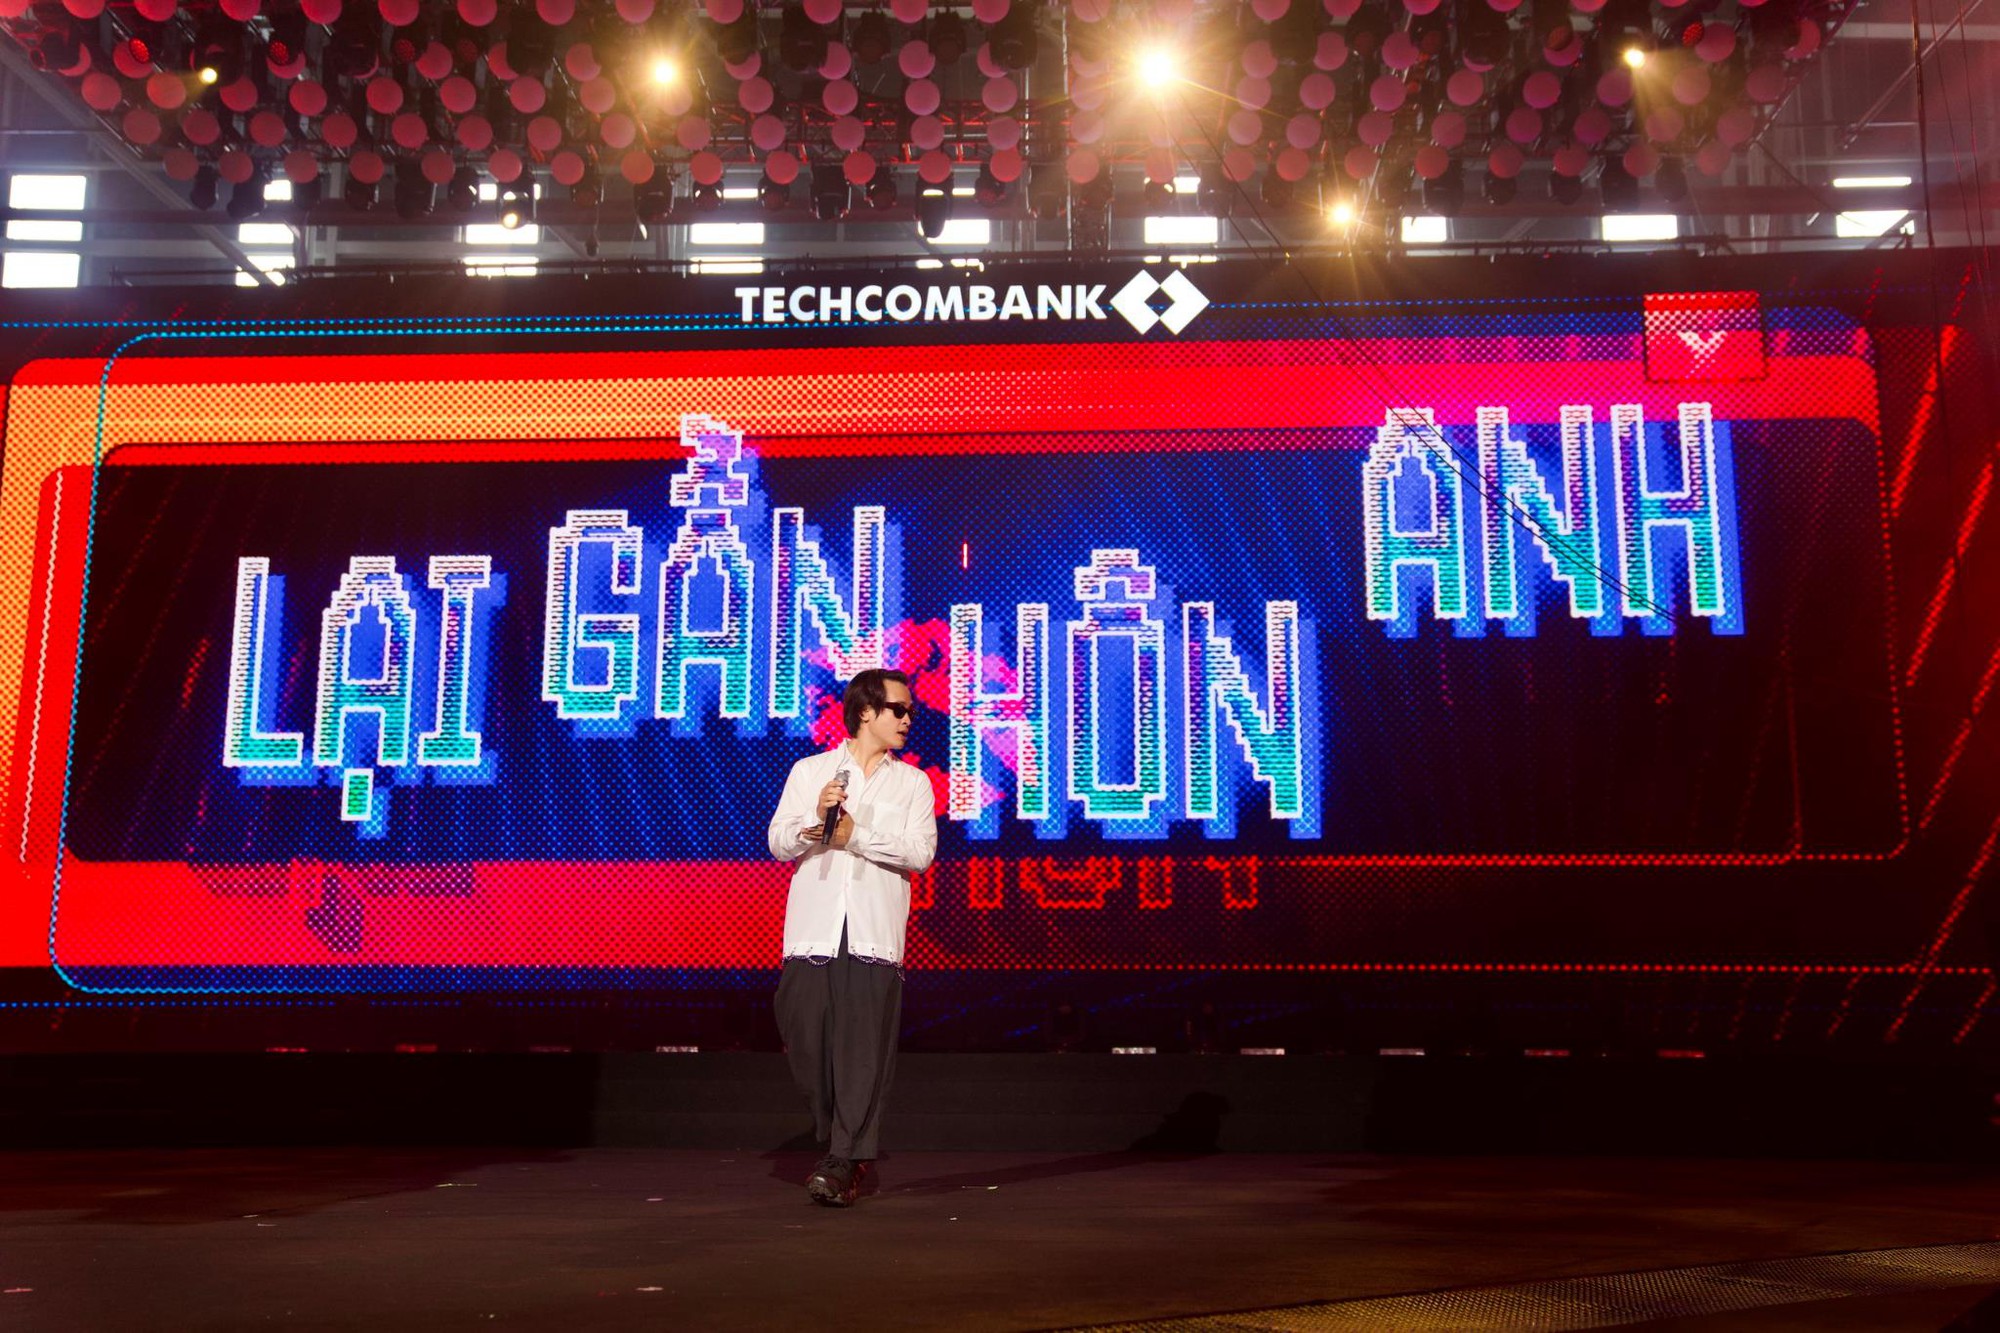 Hà Anh Tuấn, Hồ Ngọc Hà cùng dàn sao hào hứng trong buổi tổng duyệt của đêm nhạc “Thời Khắc Giao Thời” do Techcombank Priority tổ chức - Ảnh 1.